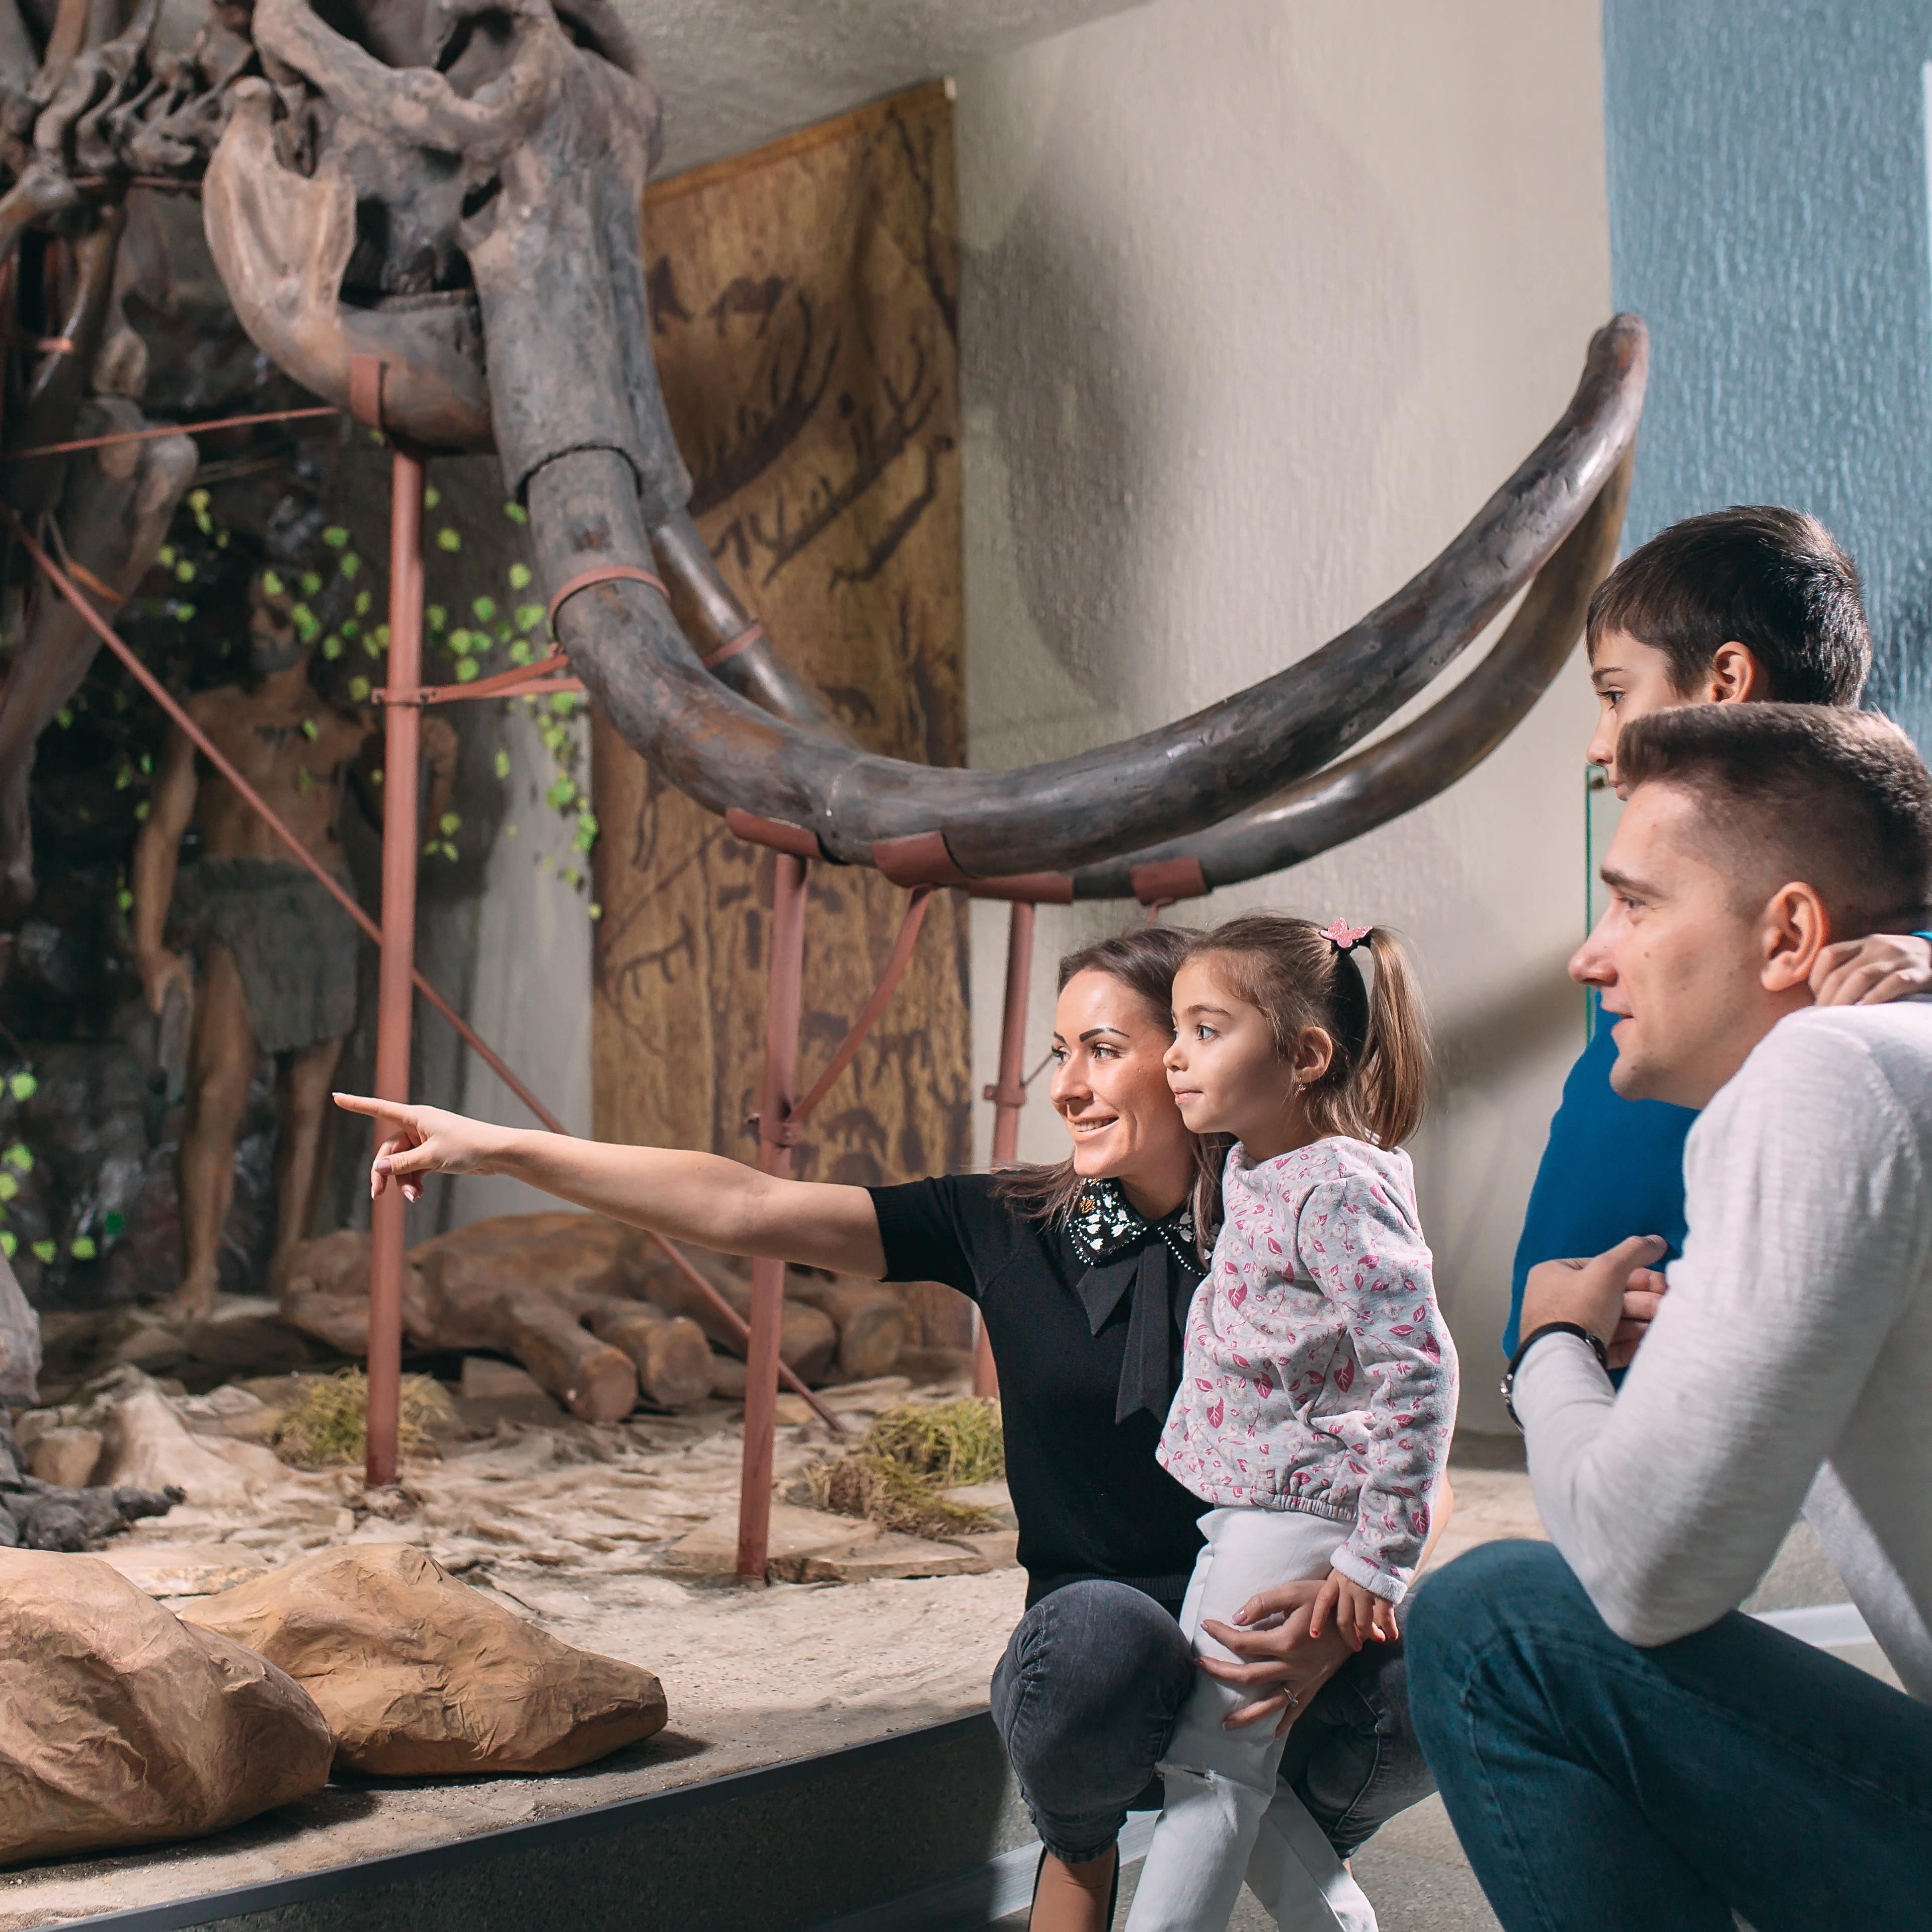 Familie mit 2 Kindern hockt vor einem Mammutskelett und schaut etwas an. Die Mutter zeigt auf etwas.